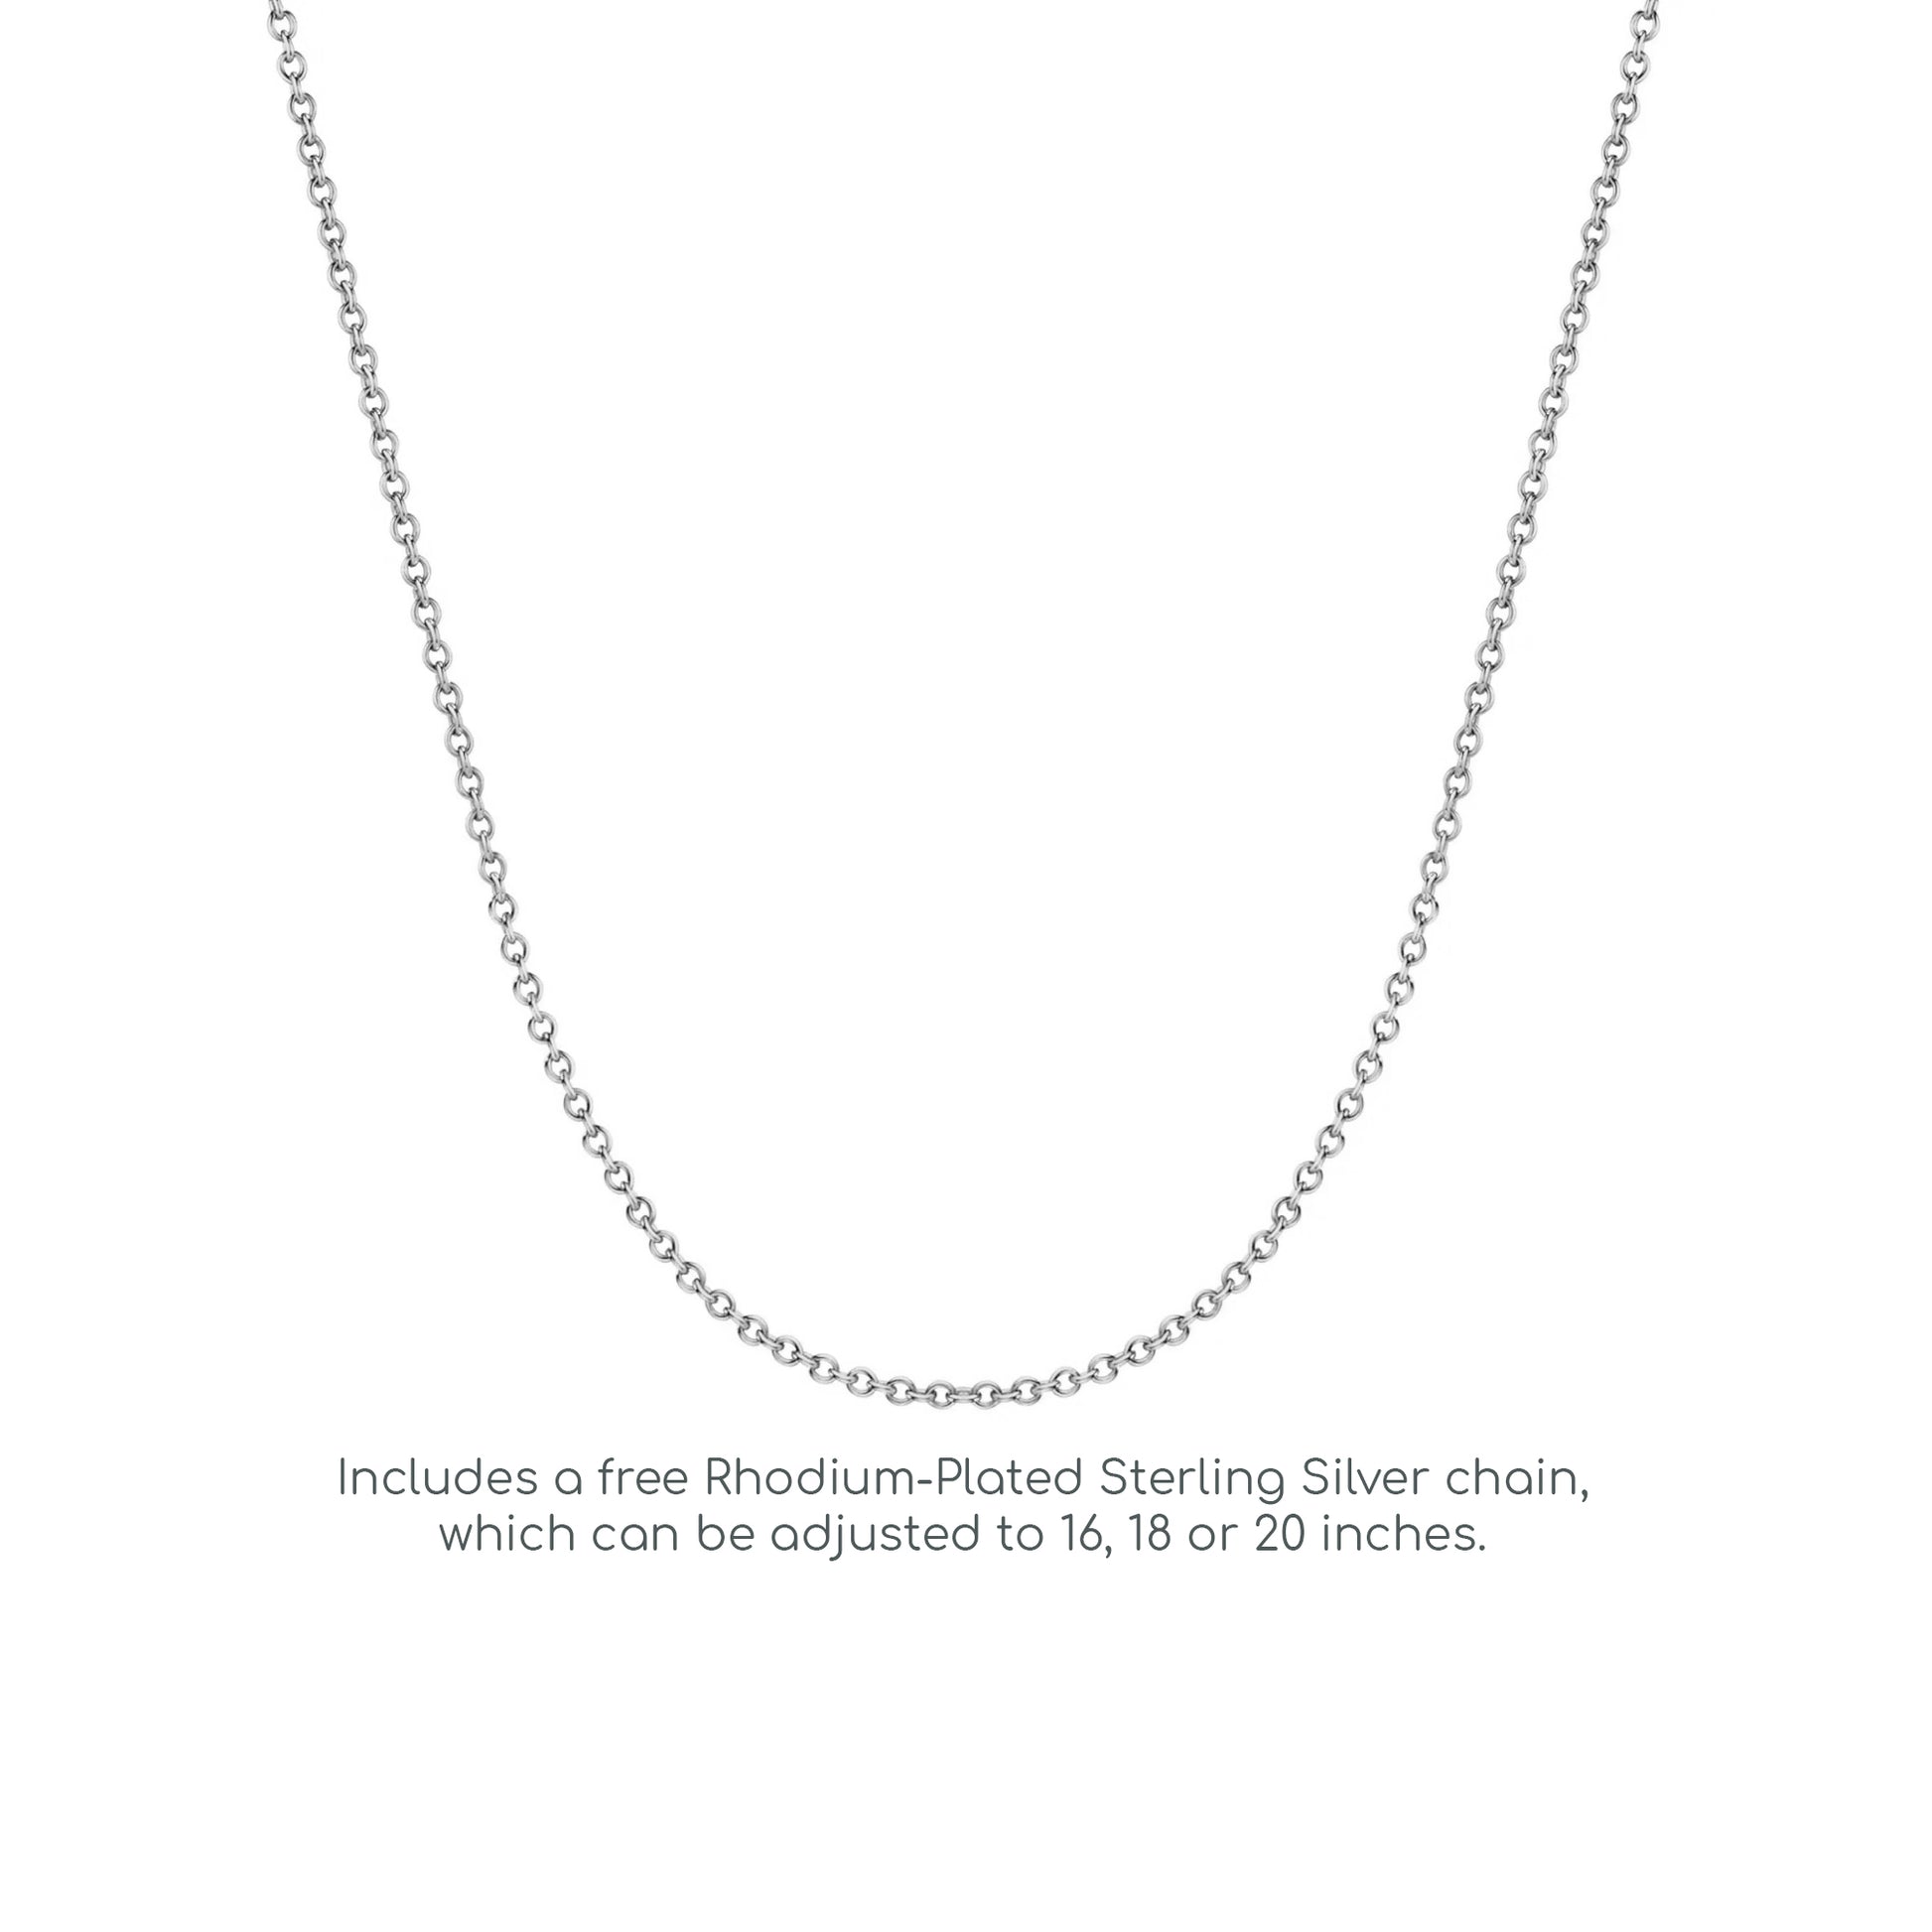 Silver  Pear CZ Tears of Joy Earrings Necklace Set 18 inch - GSET506